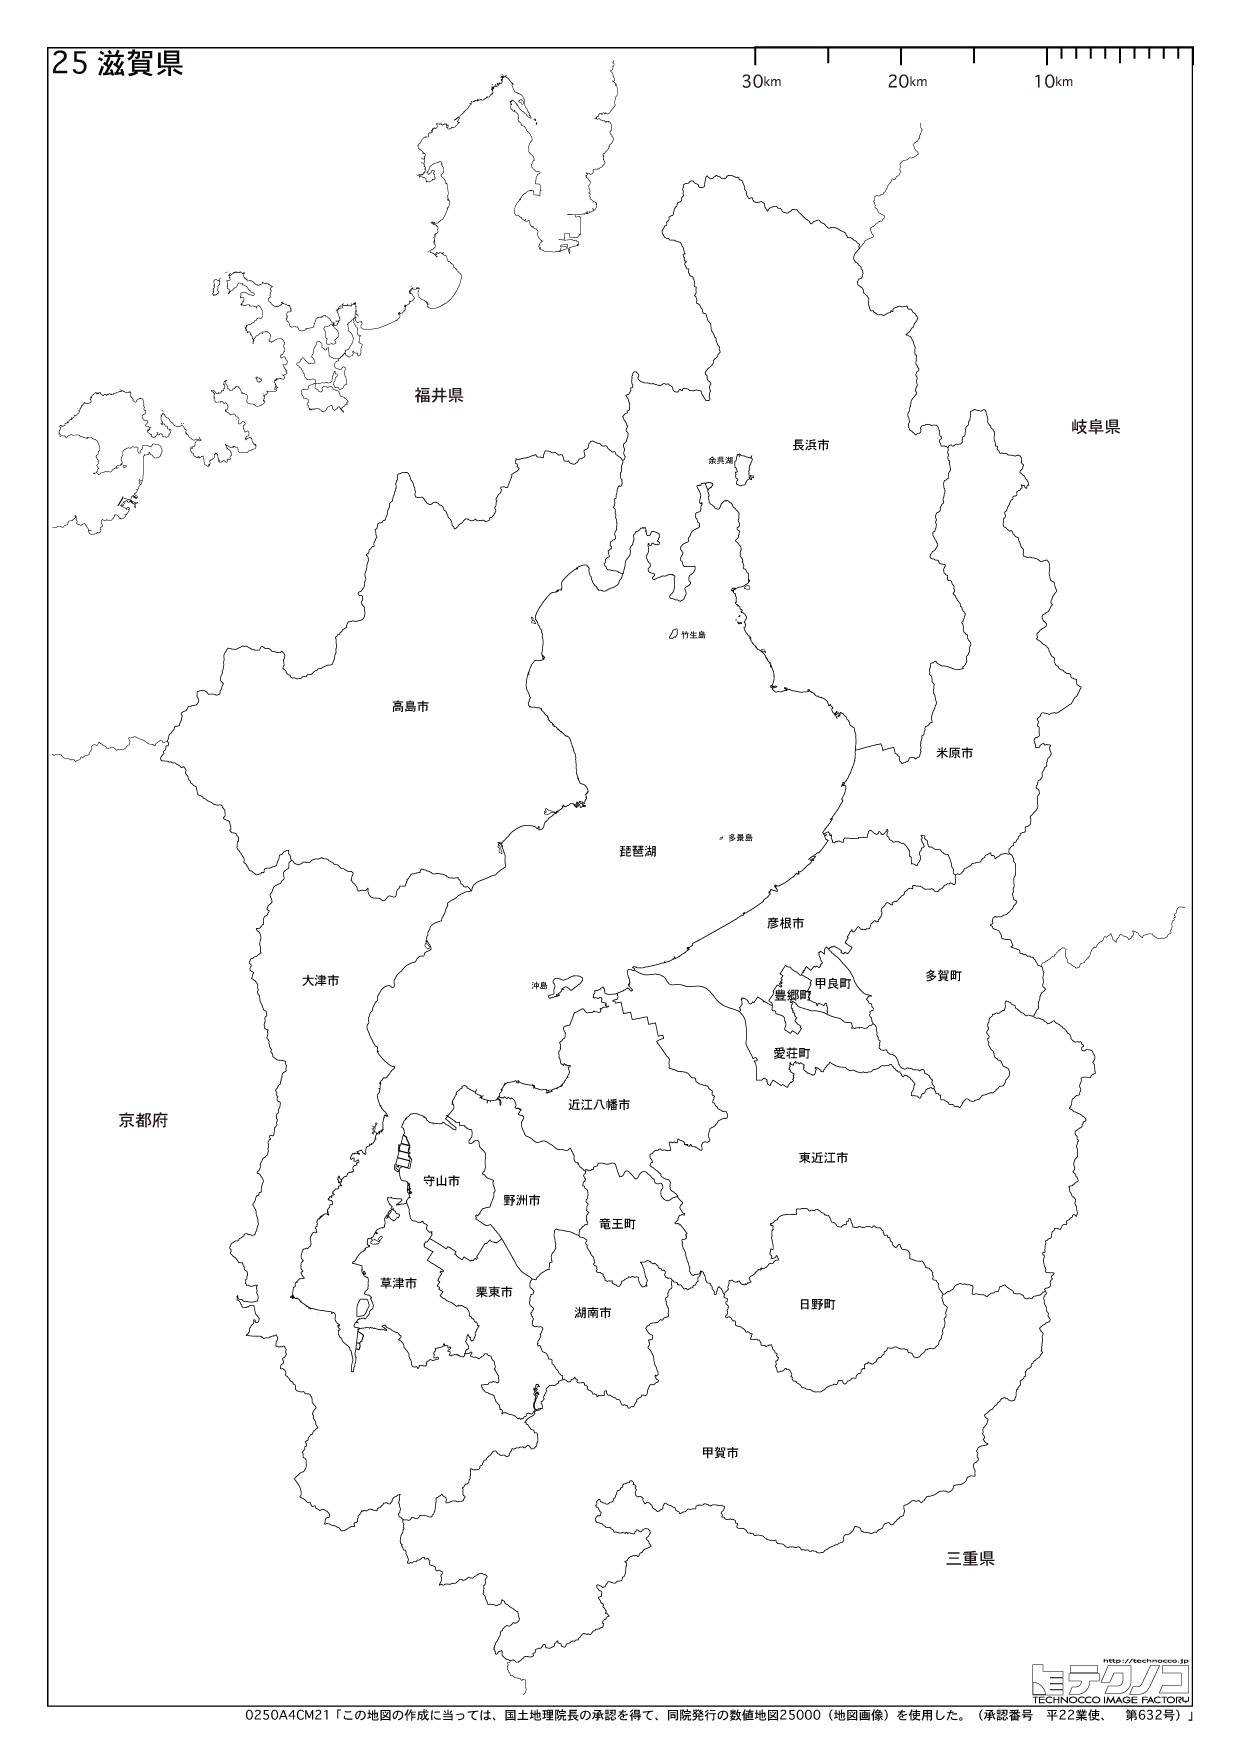 滋賀県の白地図と市町村の合併情報